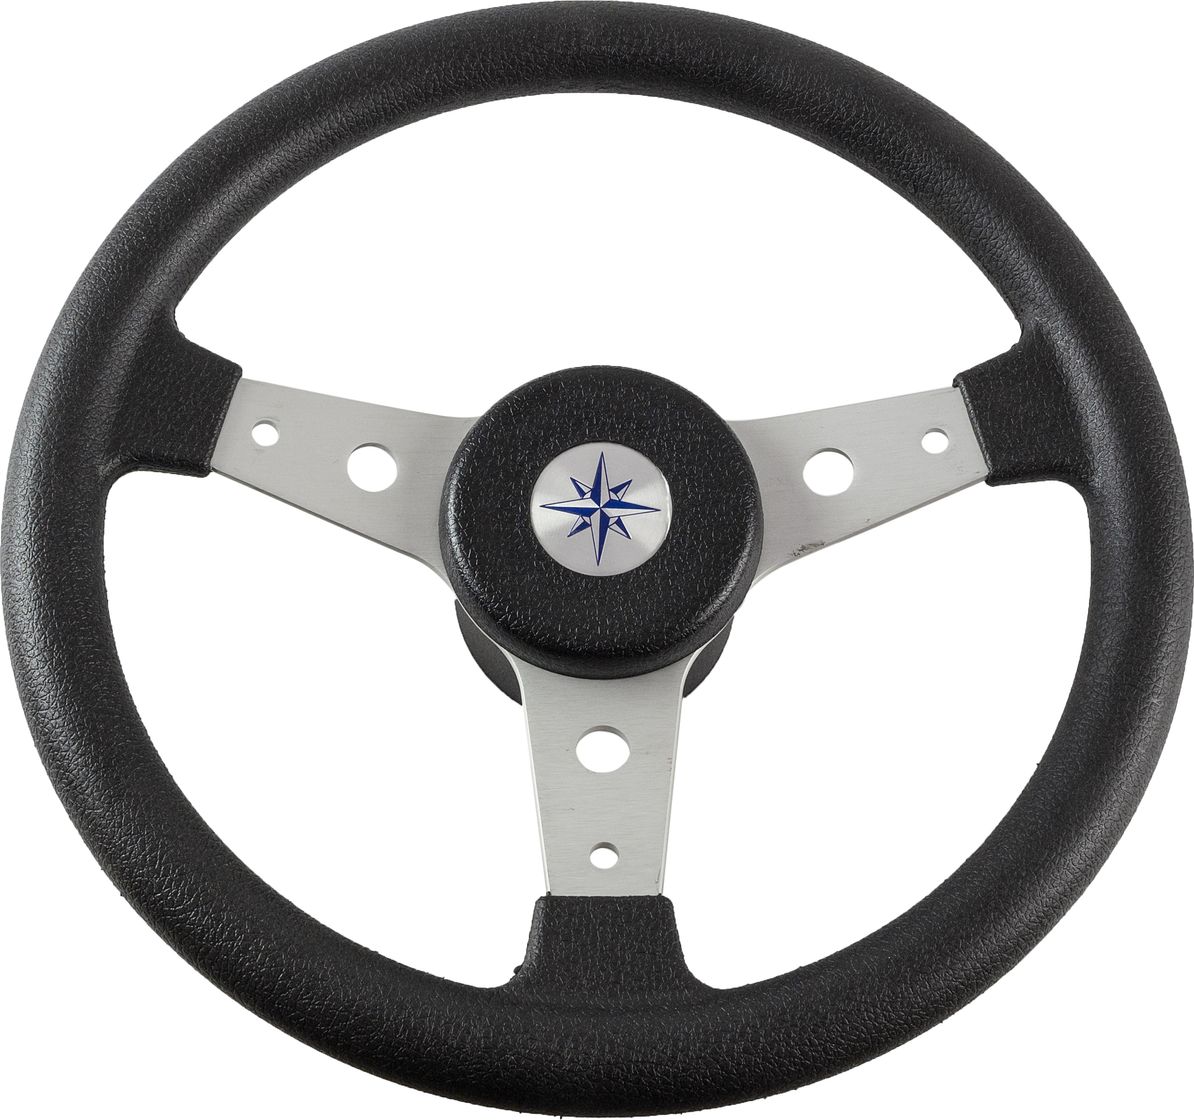 Рулевое колесо DELFINO обод черный, спицы серебряные д. 340 мм VN70401-01 рулевое колесо moza racing fsr rs21